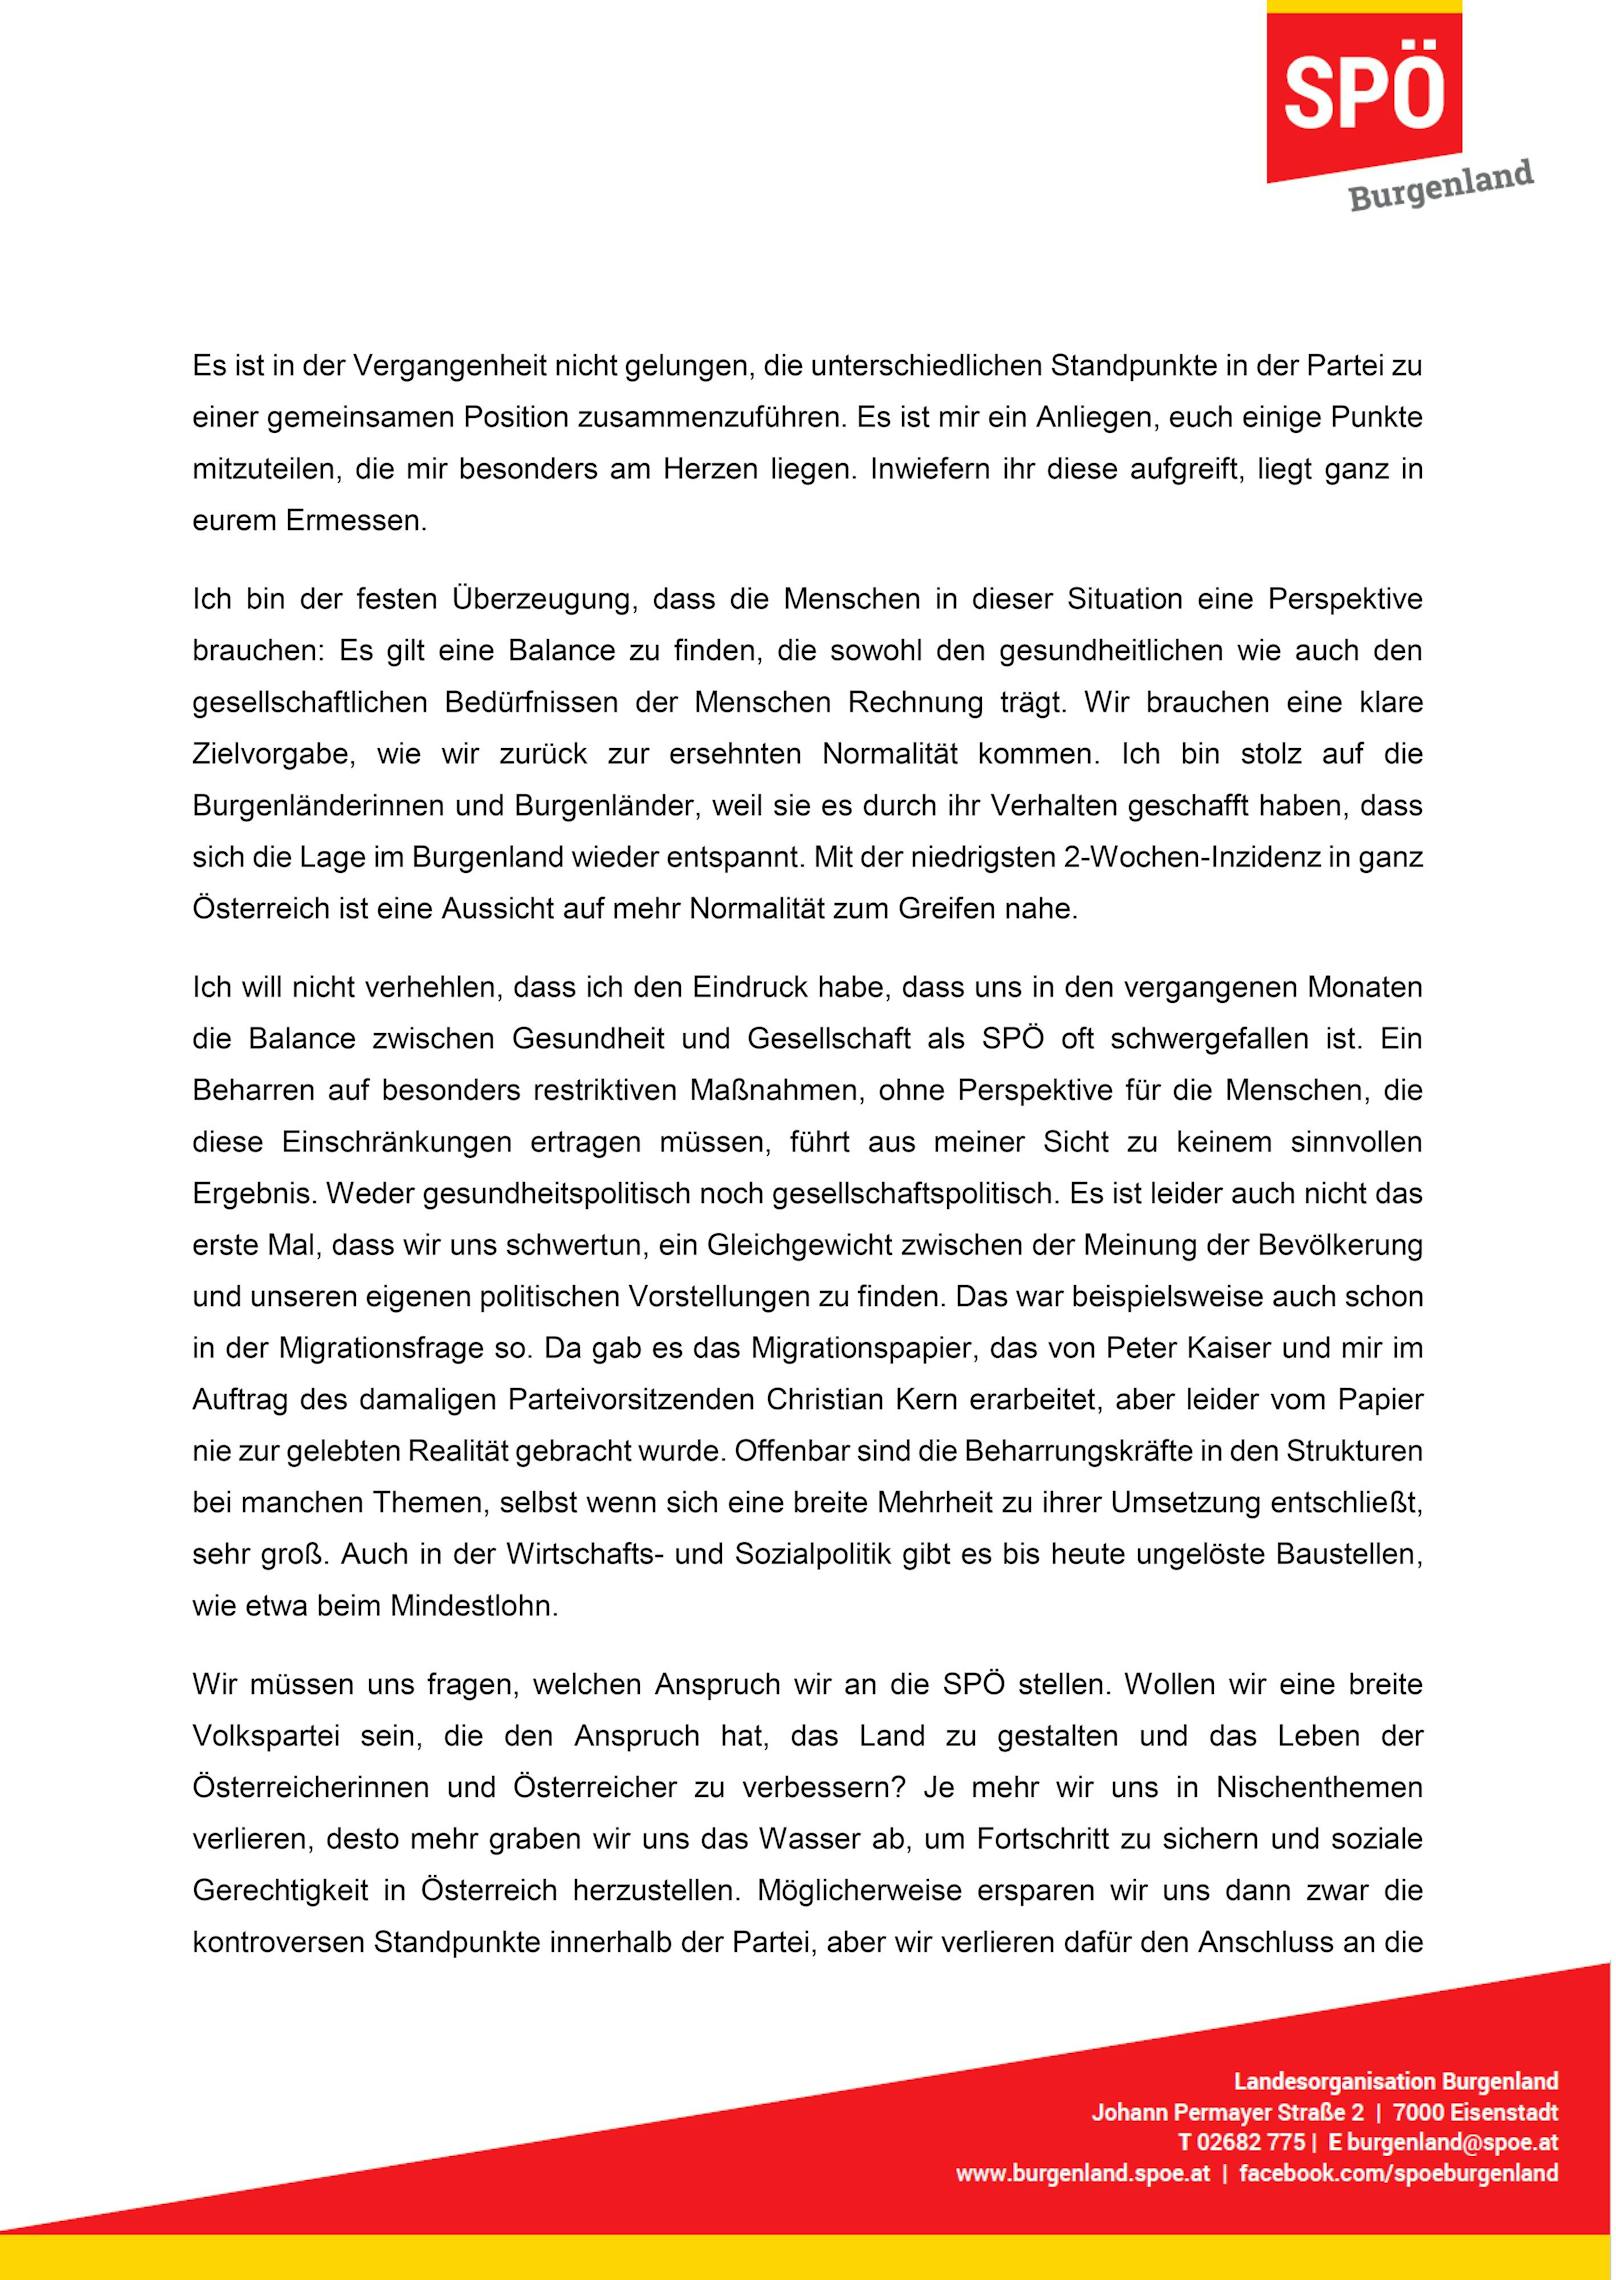 Der Brief von Hans Peter Doskozil an Pamela Rendi-Wagner im Wortlaut